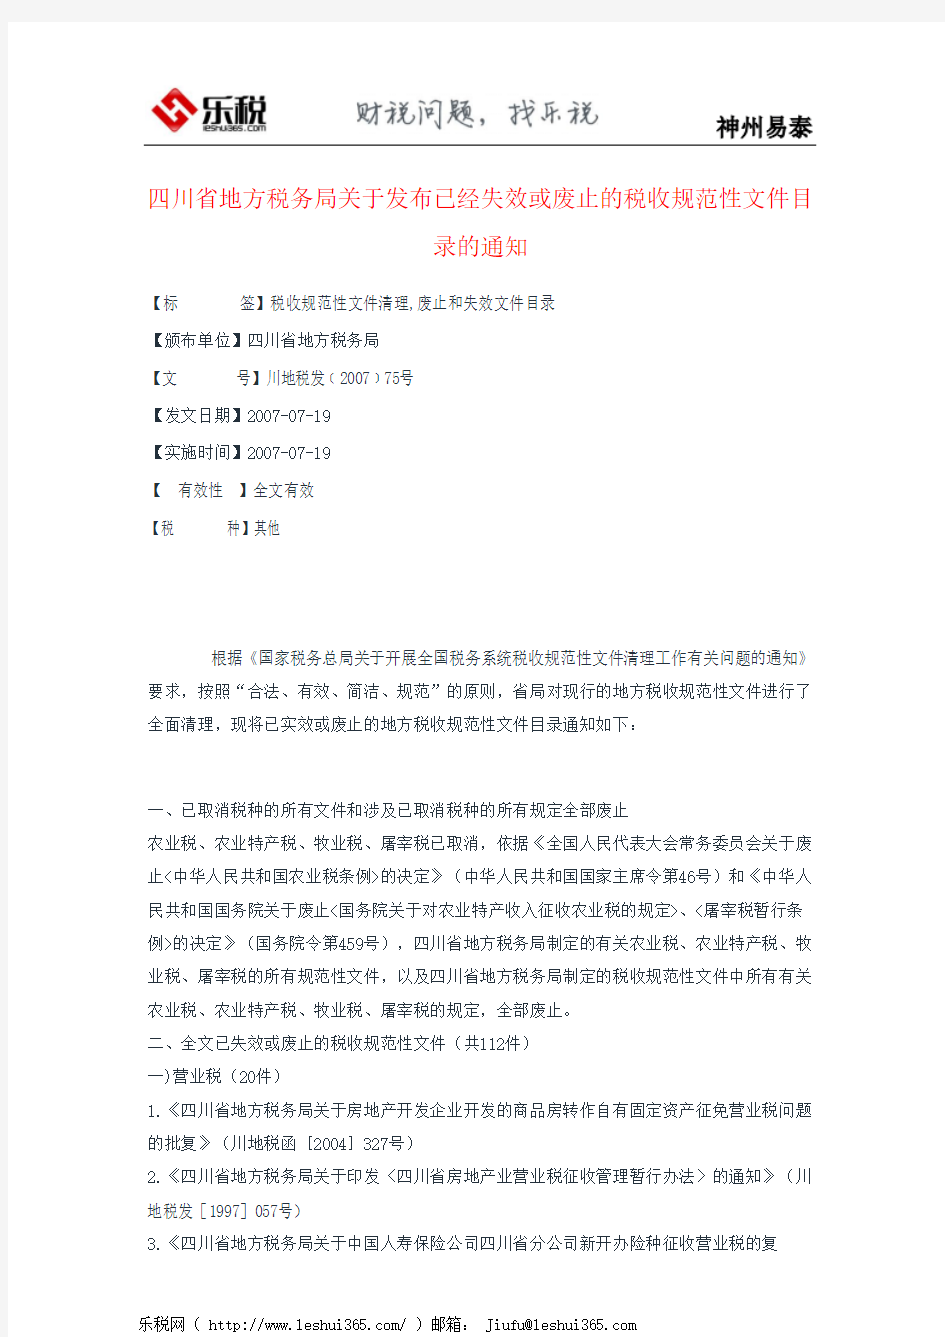 四川省地方税务局关于发布已经失效或废止的税收规范性文件目录的通知